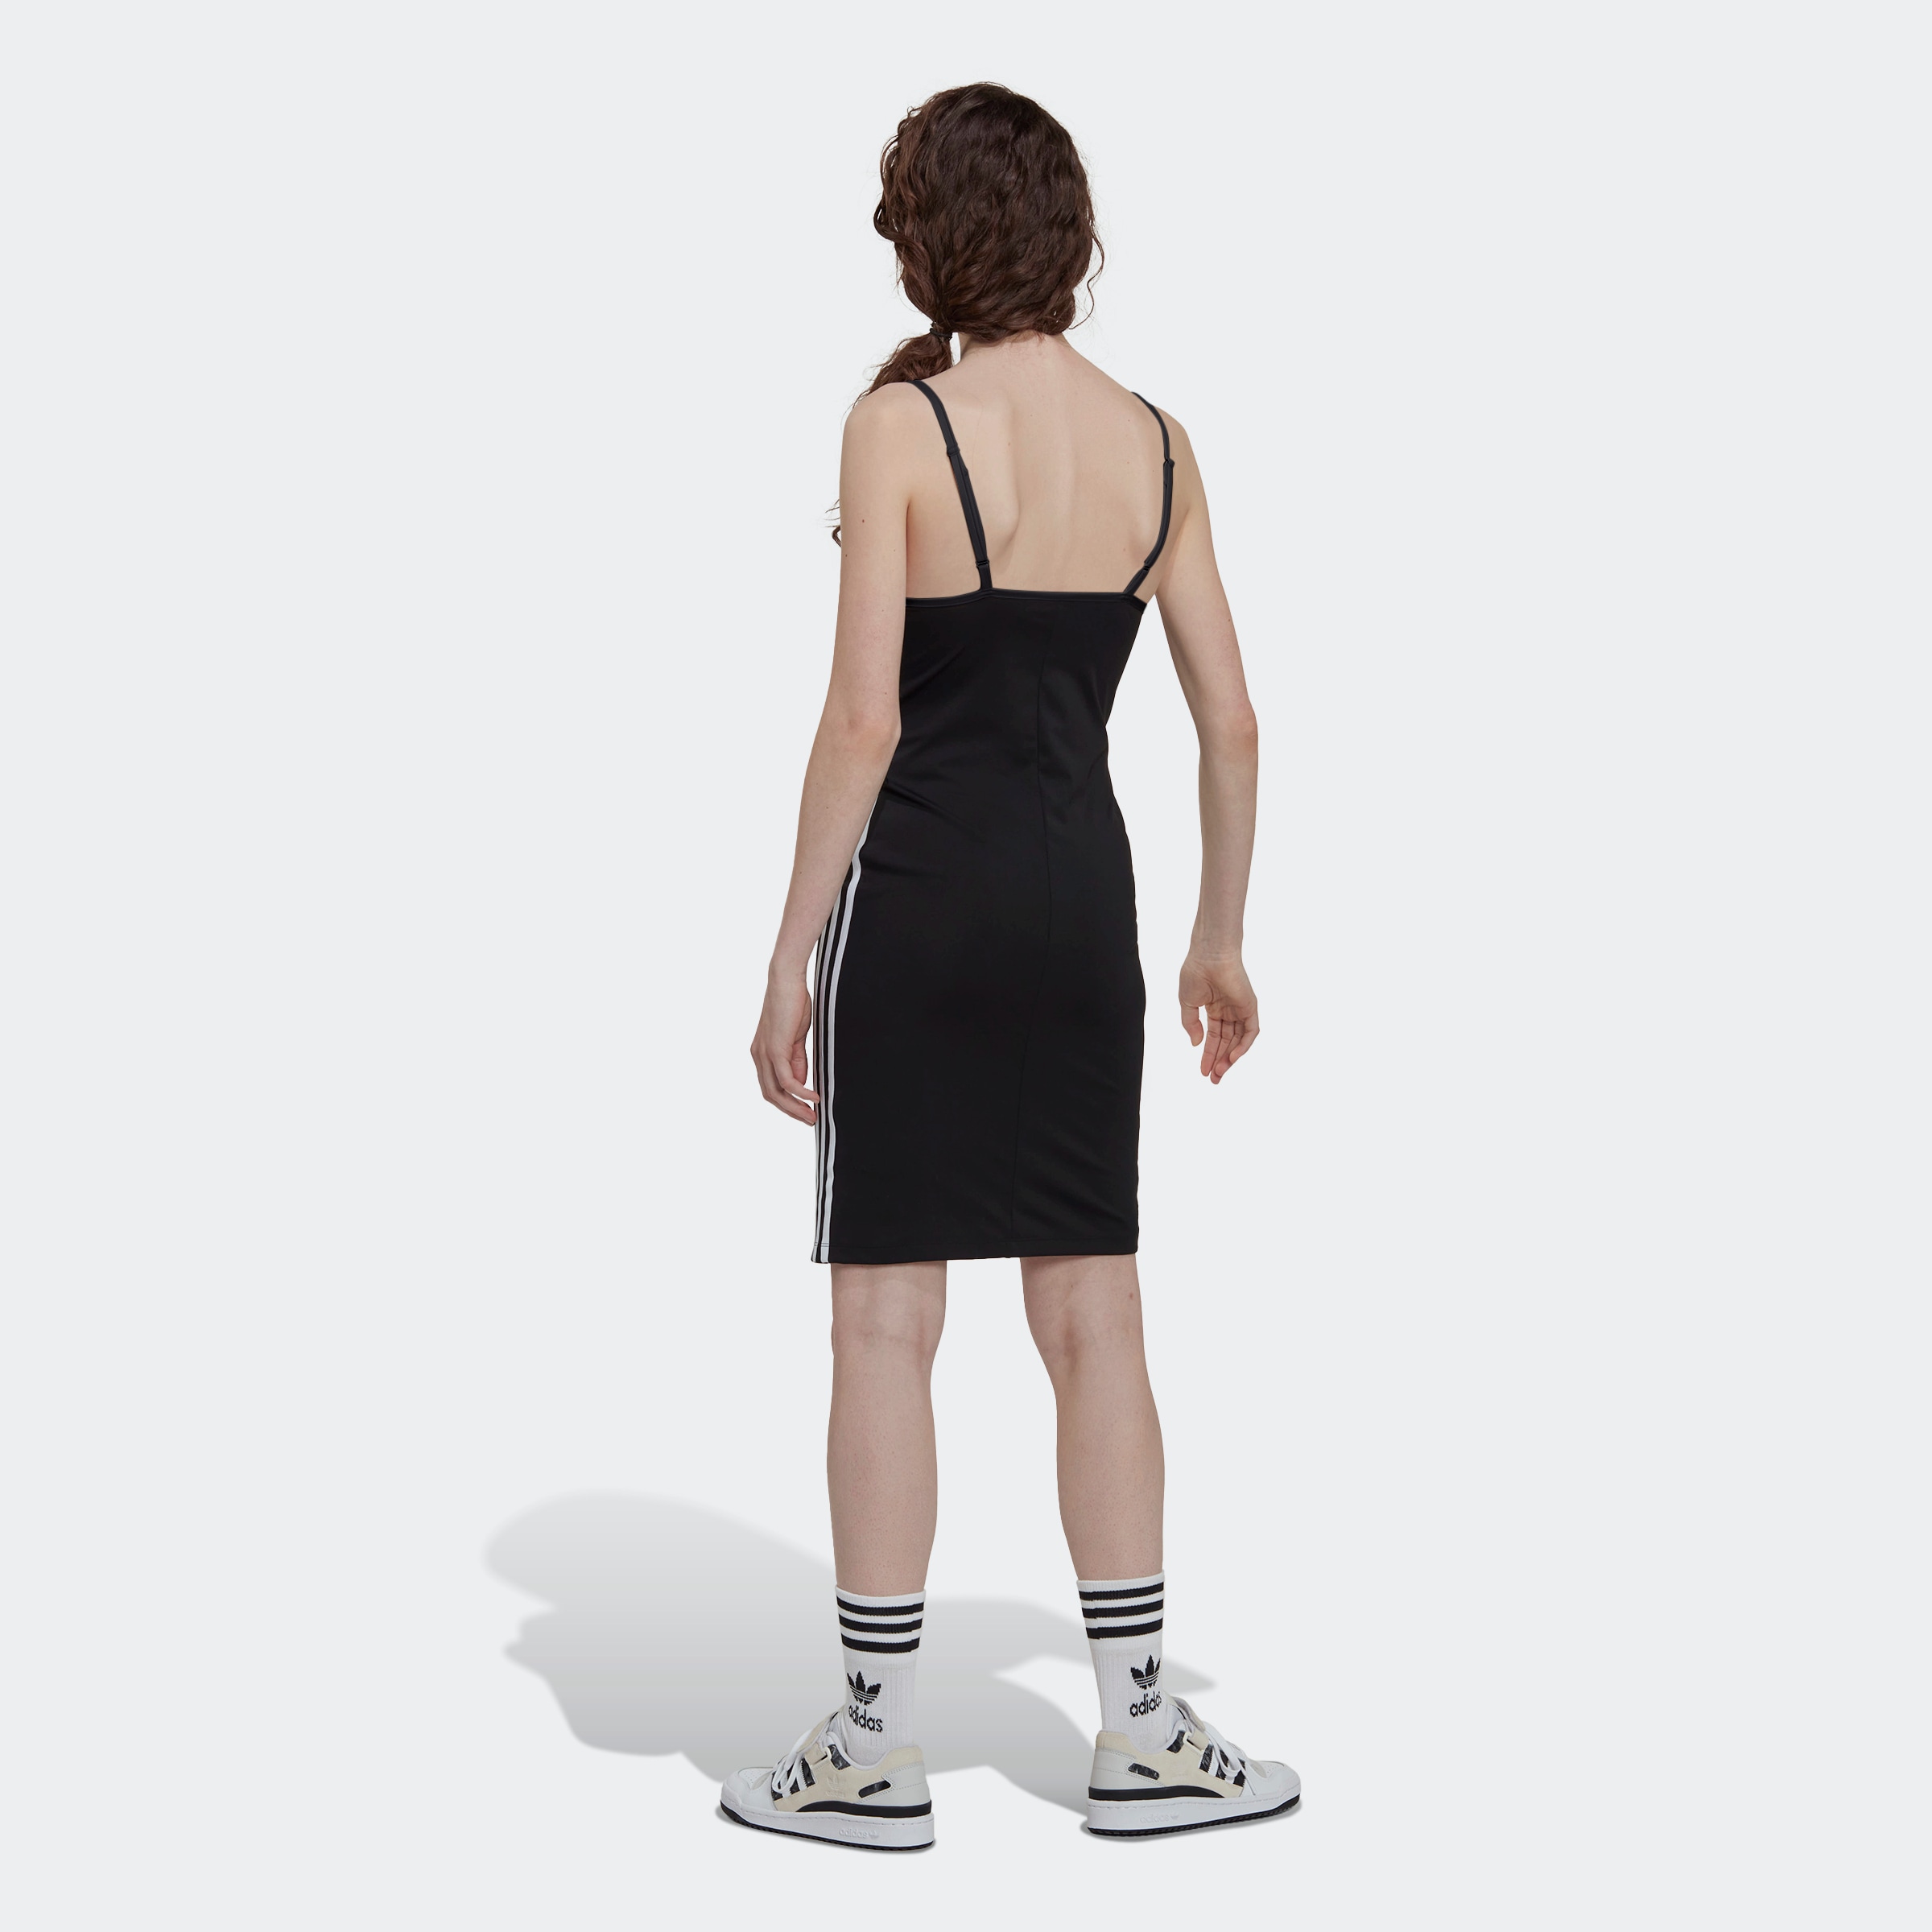 »ALWAYS ORIGINAL BAUR STRAP Originals online Sommerkleid bestellen adidas | LACED KLEID«